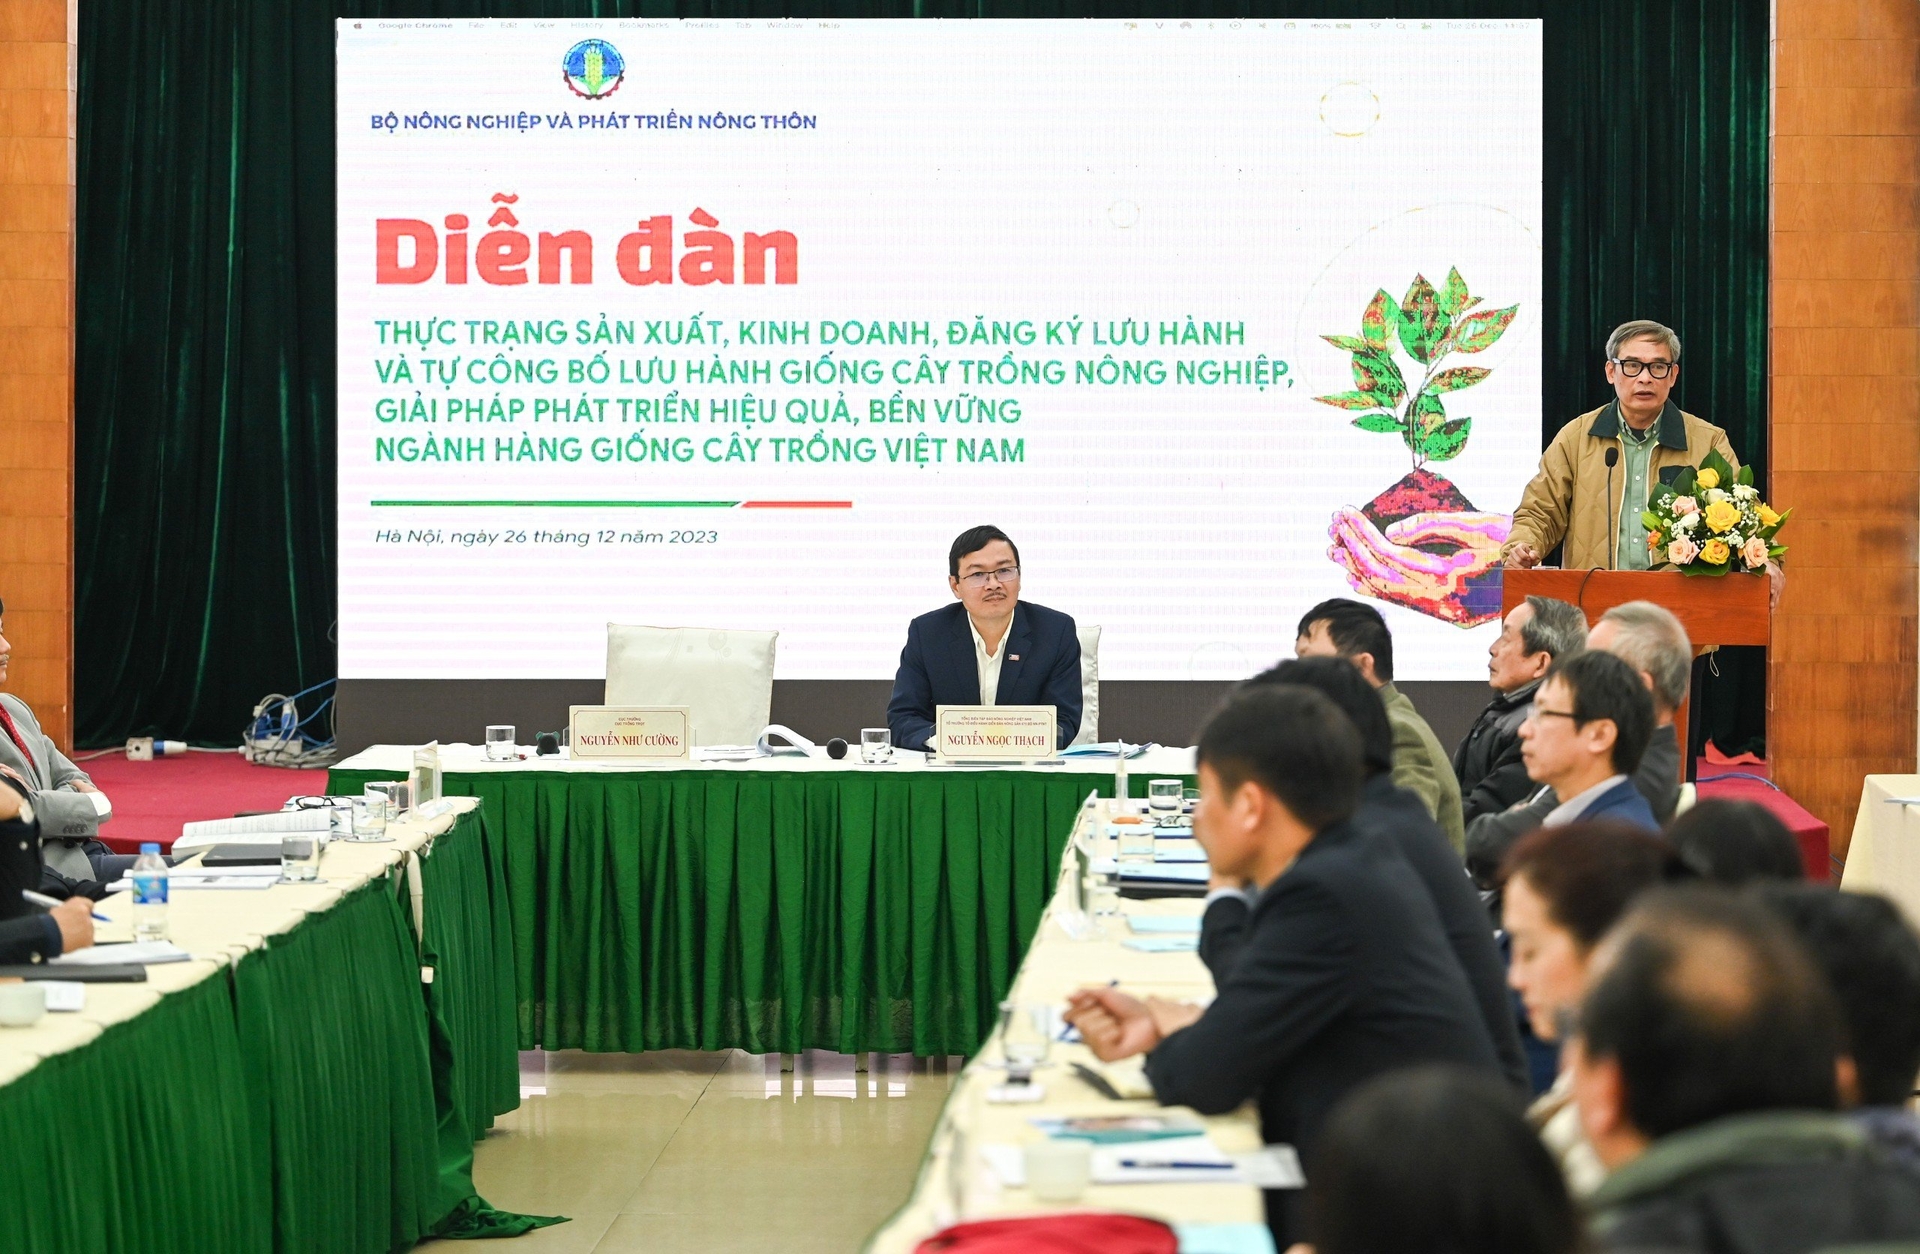 Diễn đàn 'Thực trạng sản xuất, kinh doanh, đăng ký lưu hành và tự công bố lưu hành giống cây trồng nông nghiệp, giải pháp phát triển hiệu quả, bền vững ngành hàng giống cây trồng Việt Nam' được tổ chức vào sáng 26/12.